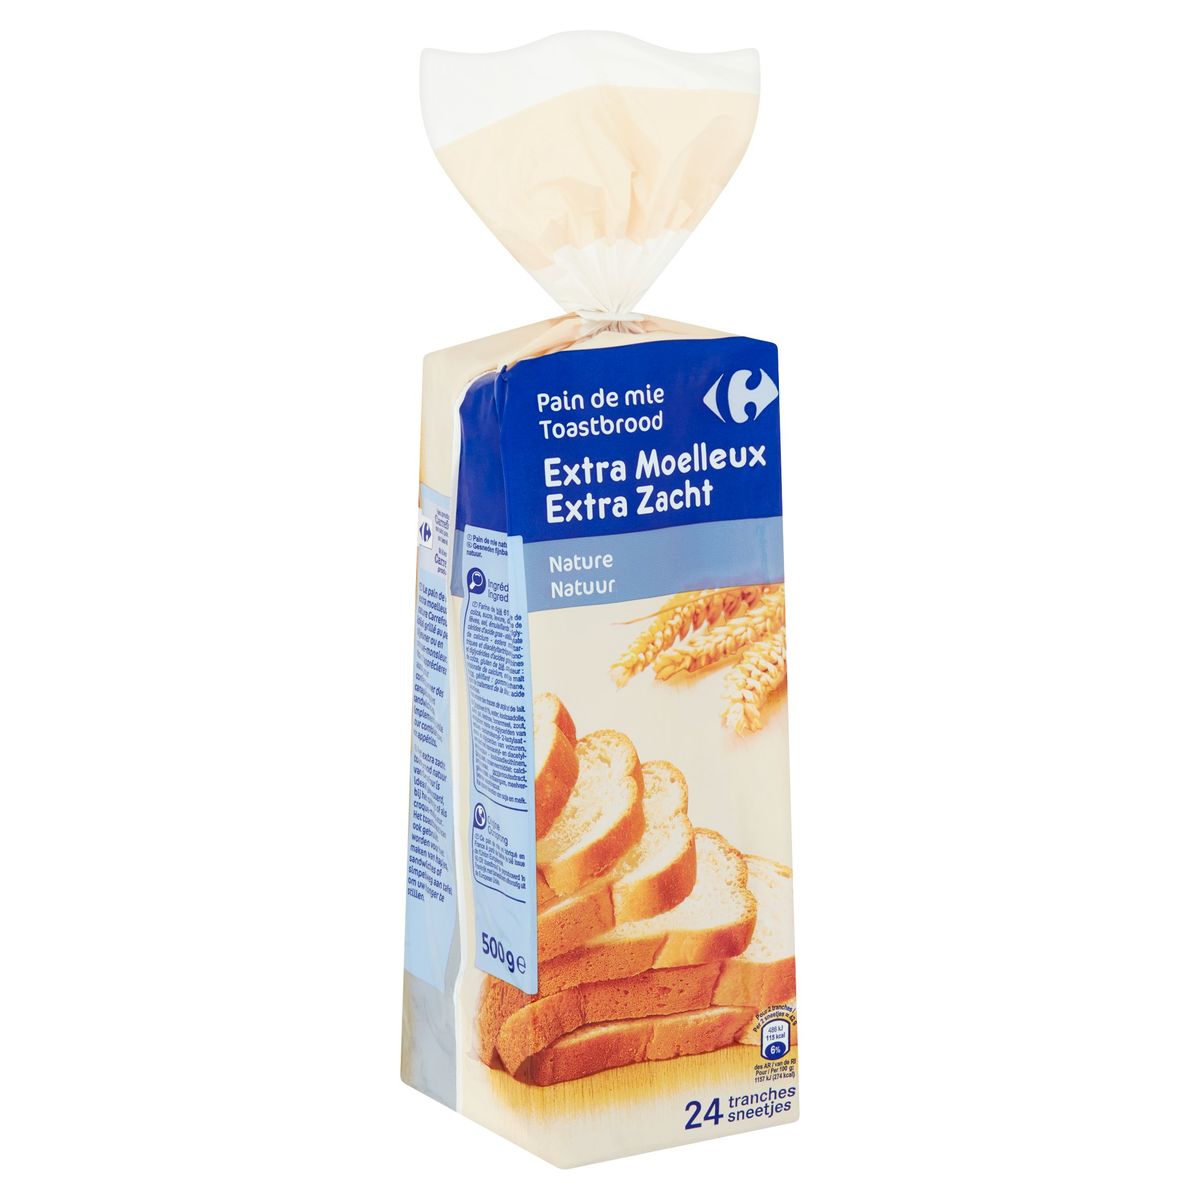 Carrefour Toastbrood Extra Zacht Natuur 24 Sneetjes 500 g